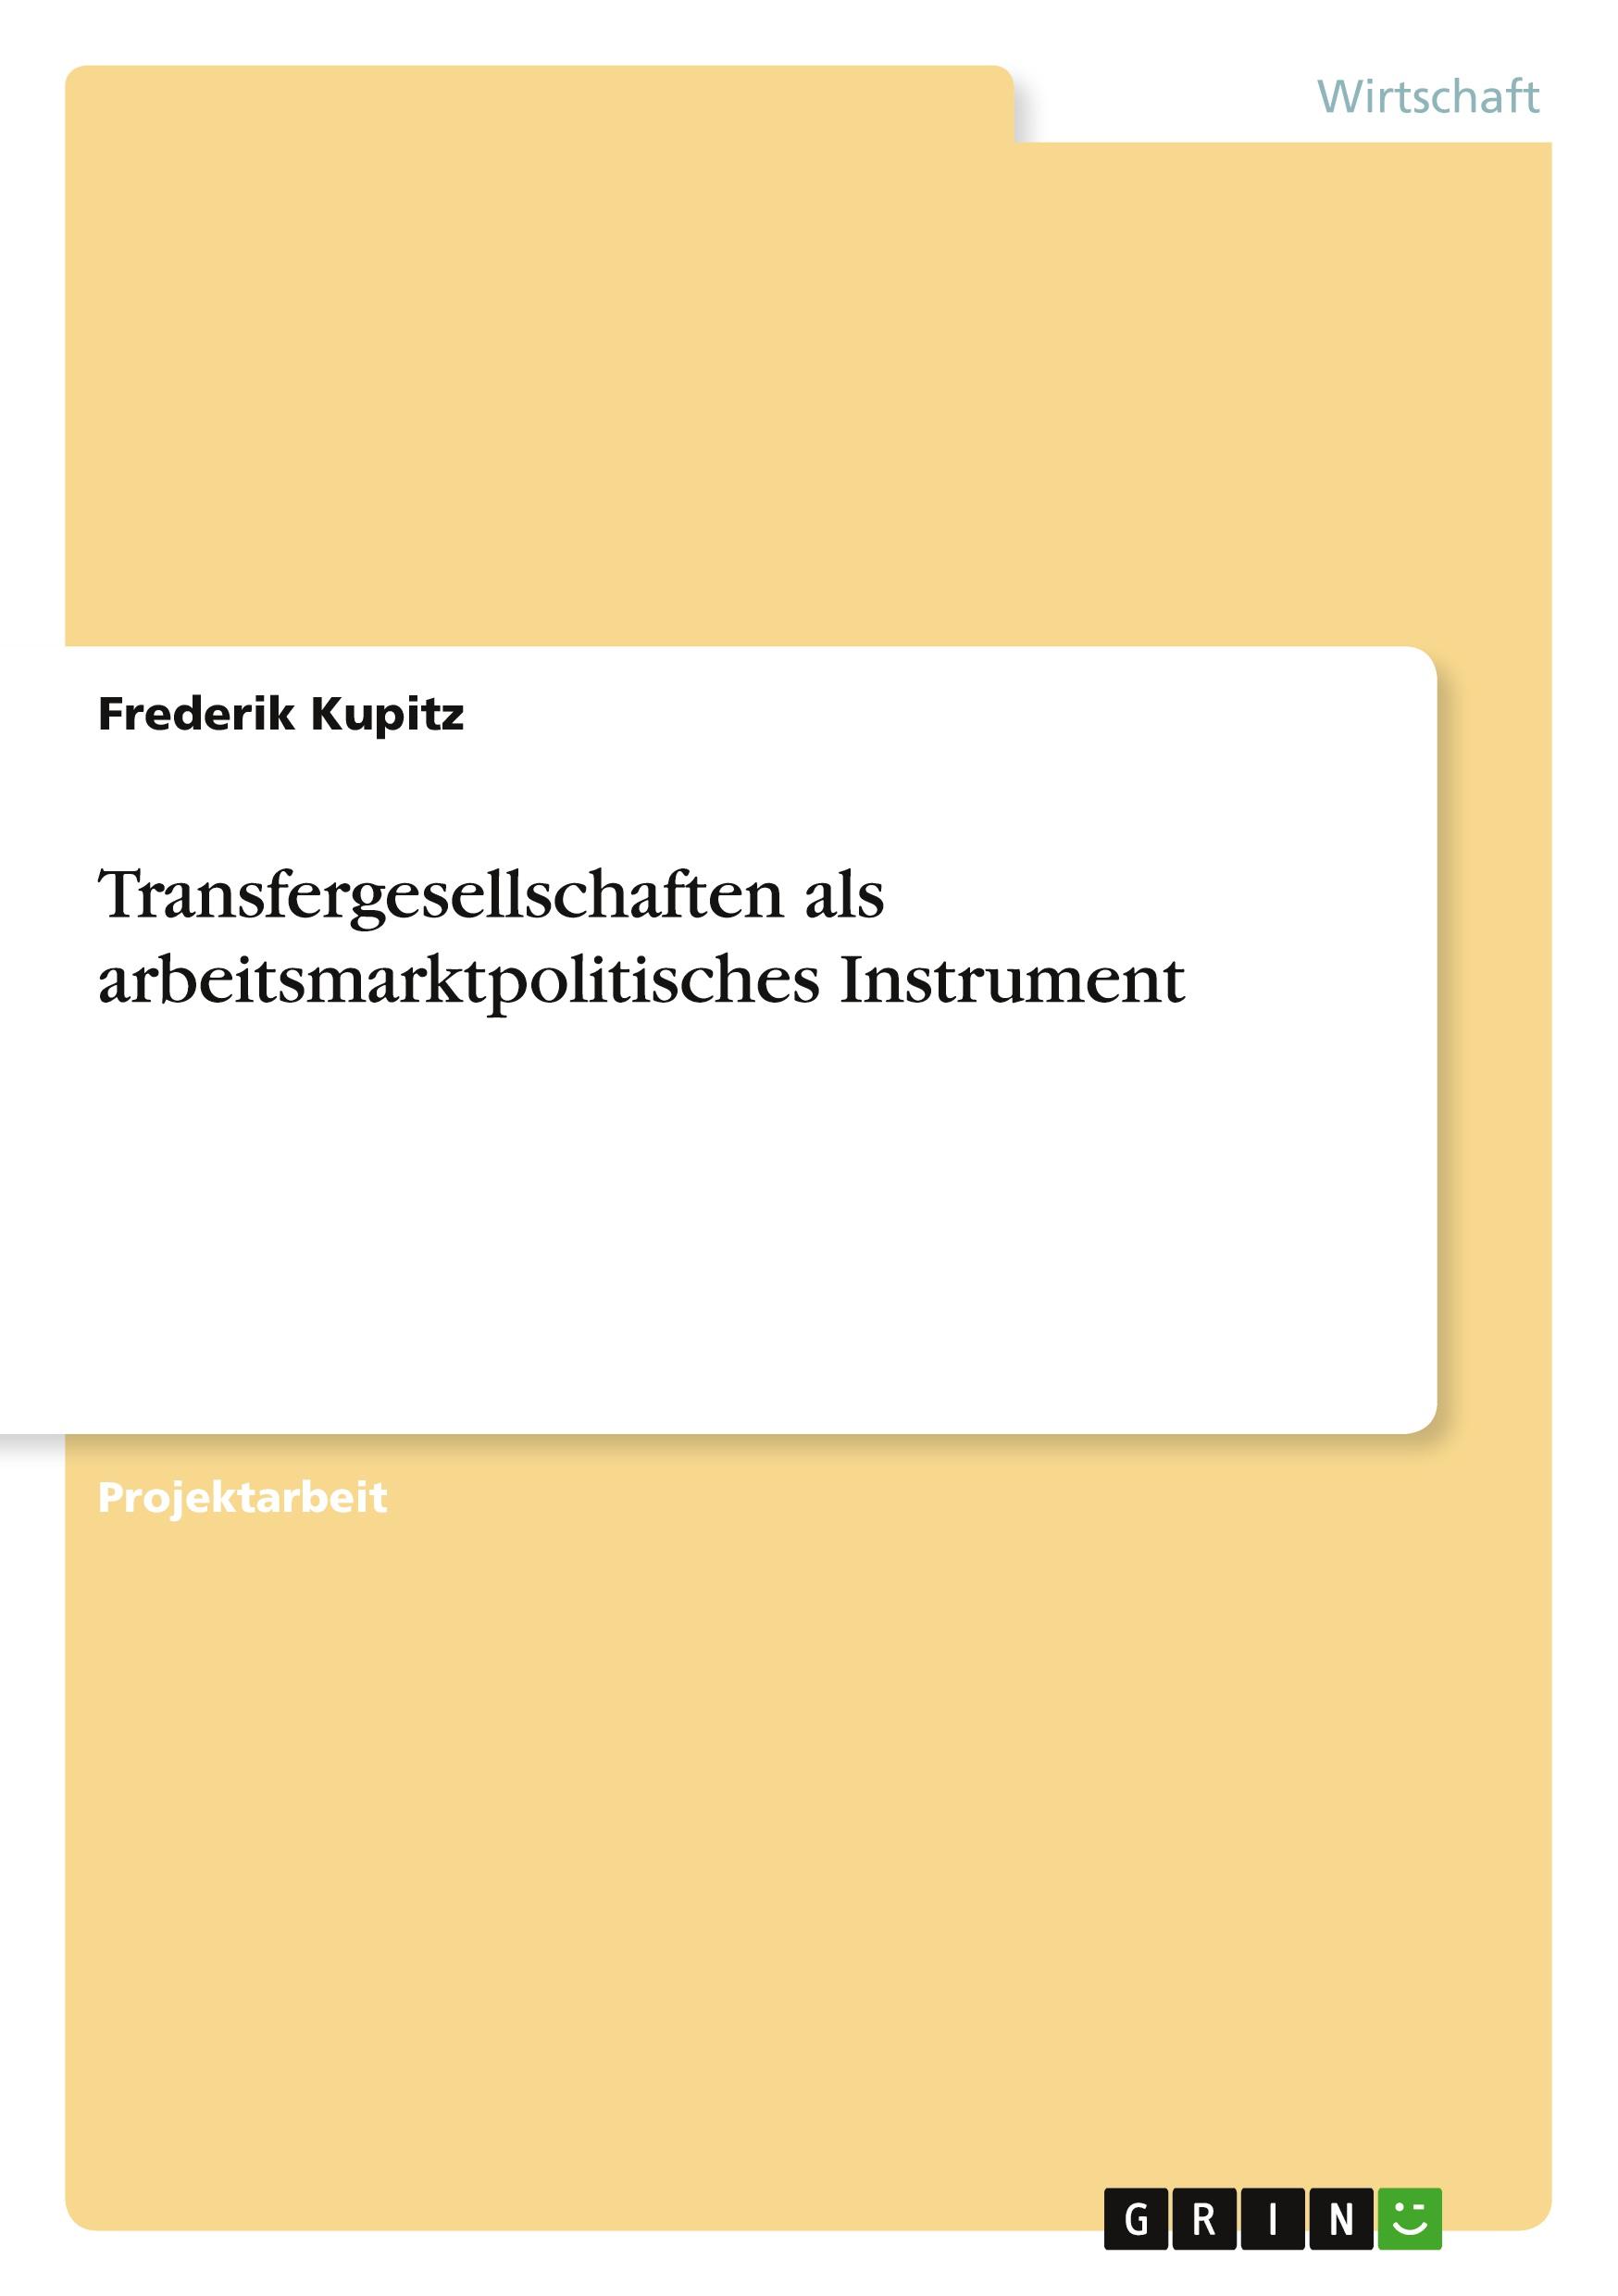 Transfergesellschaften als arbeitsmarktpolitisches Instrument / Frederik Kupitz / Taschenbuch / Paperback / Deutsch / 2010 / GRIN Verlag / EAN 9783640663286 - Kupitz, Frederik